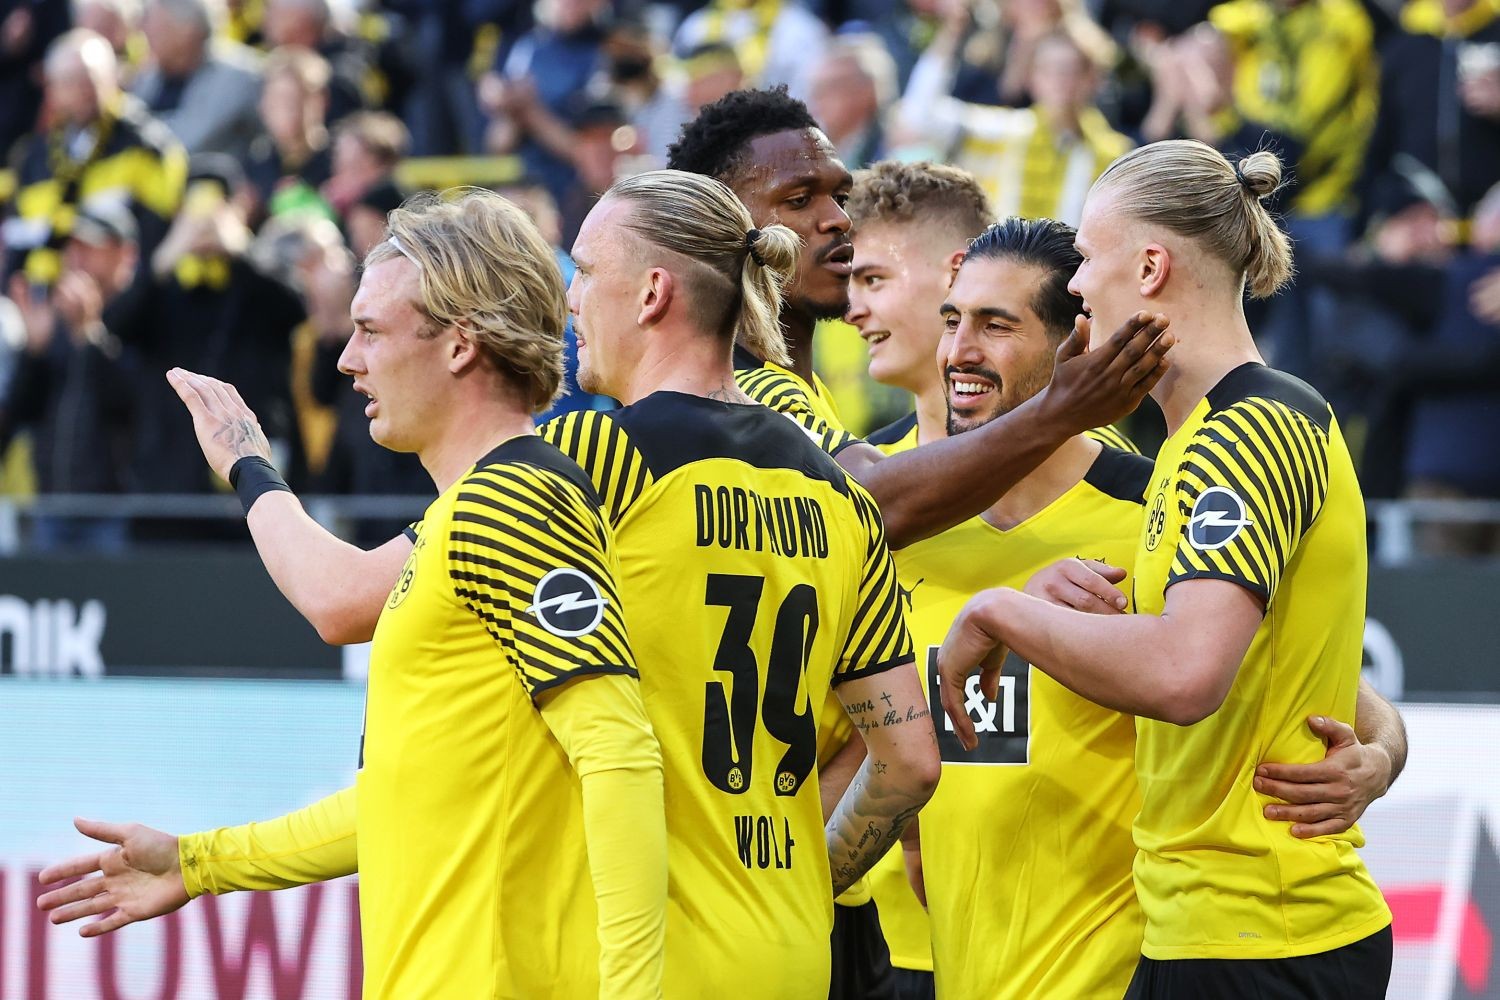 OFICJALNIE: Kadra Borussii Dortmund na finał Ligi Mistrzów. Ważny powrót